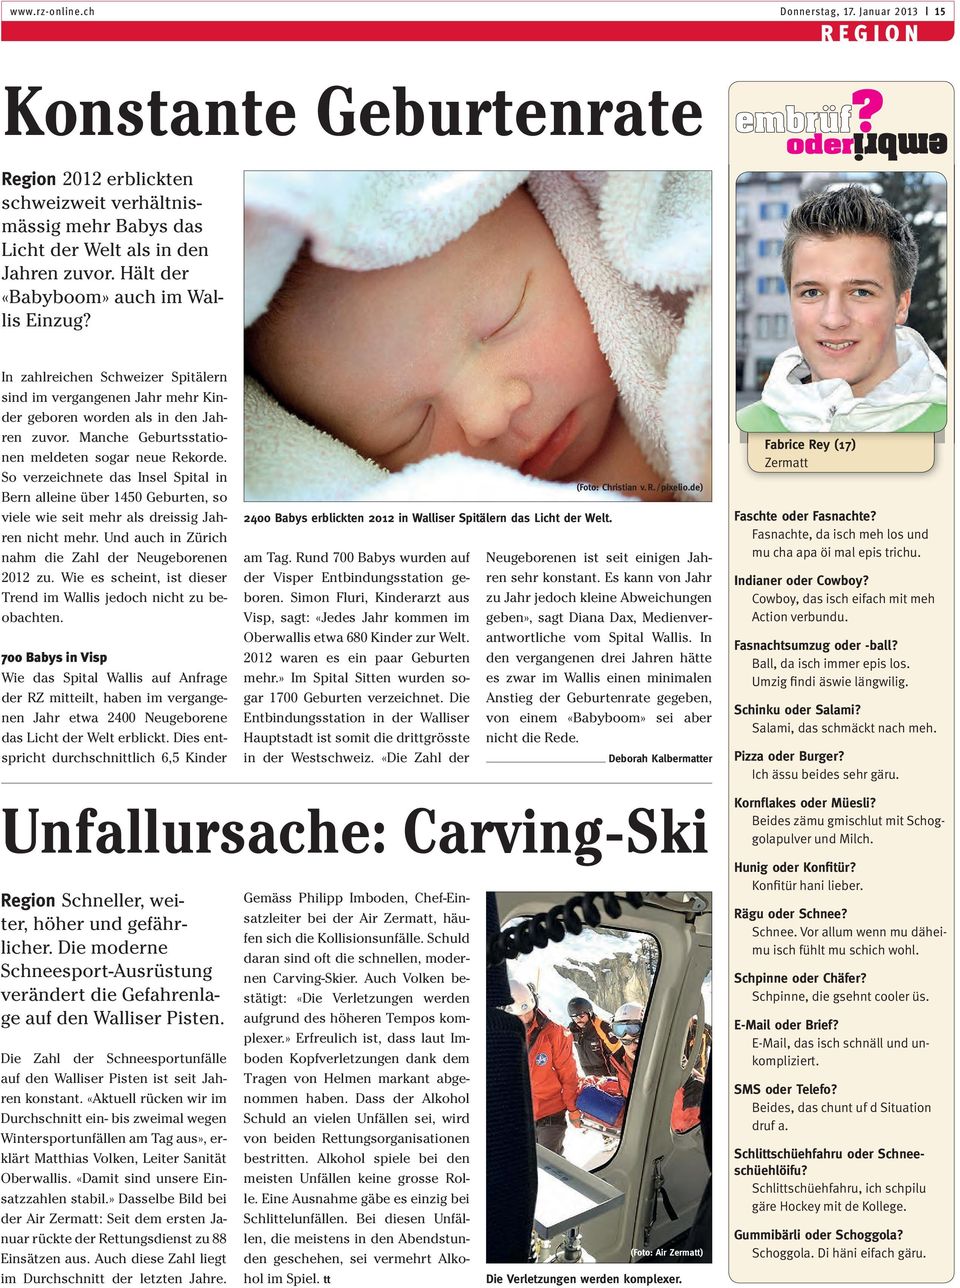 Manche Geburtsstationen meldeten sogar neue Rekorde. So verzeichnete das Insel Spital in Bern alleine über 1450 Geburten, so viele wie seit mehr als dreissig Jahren nicht mehr.